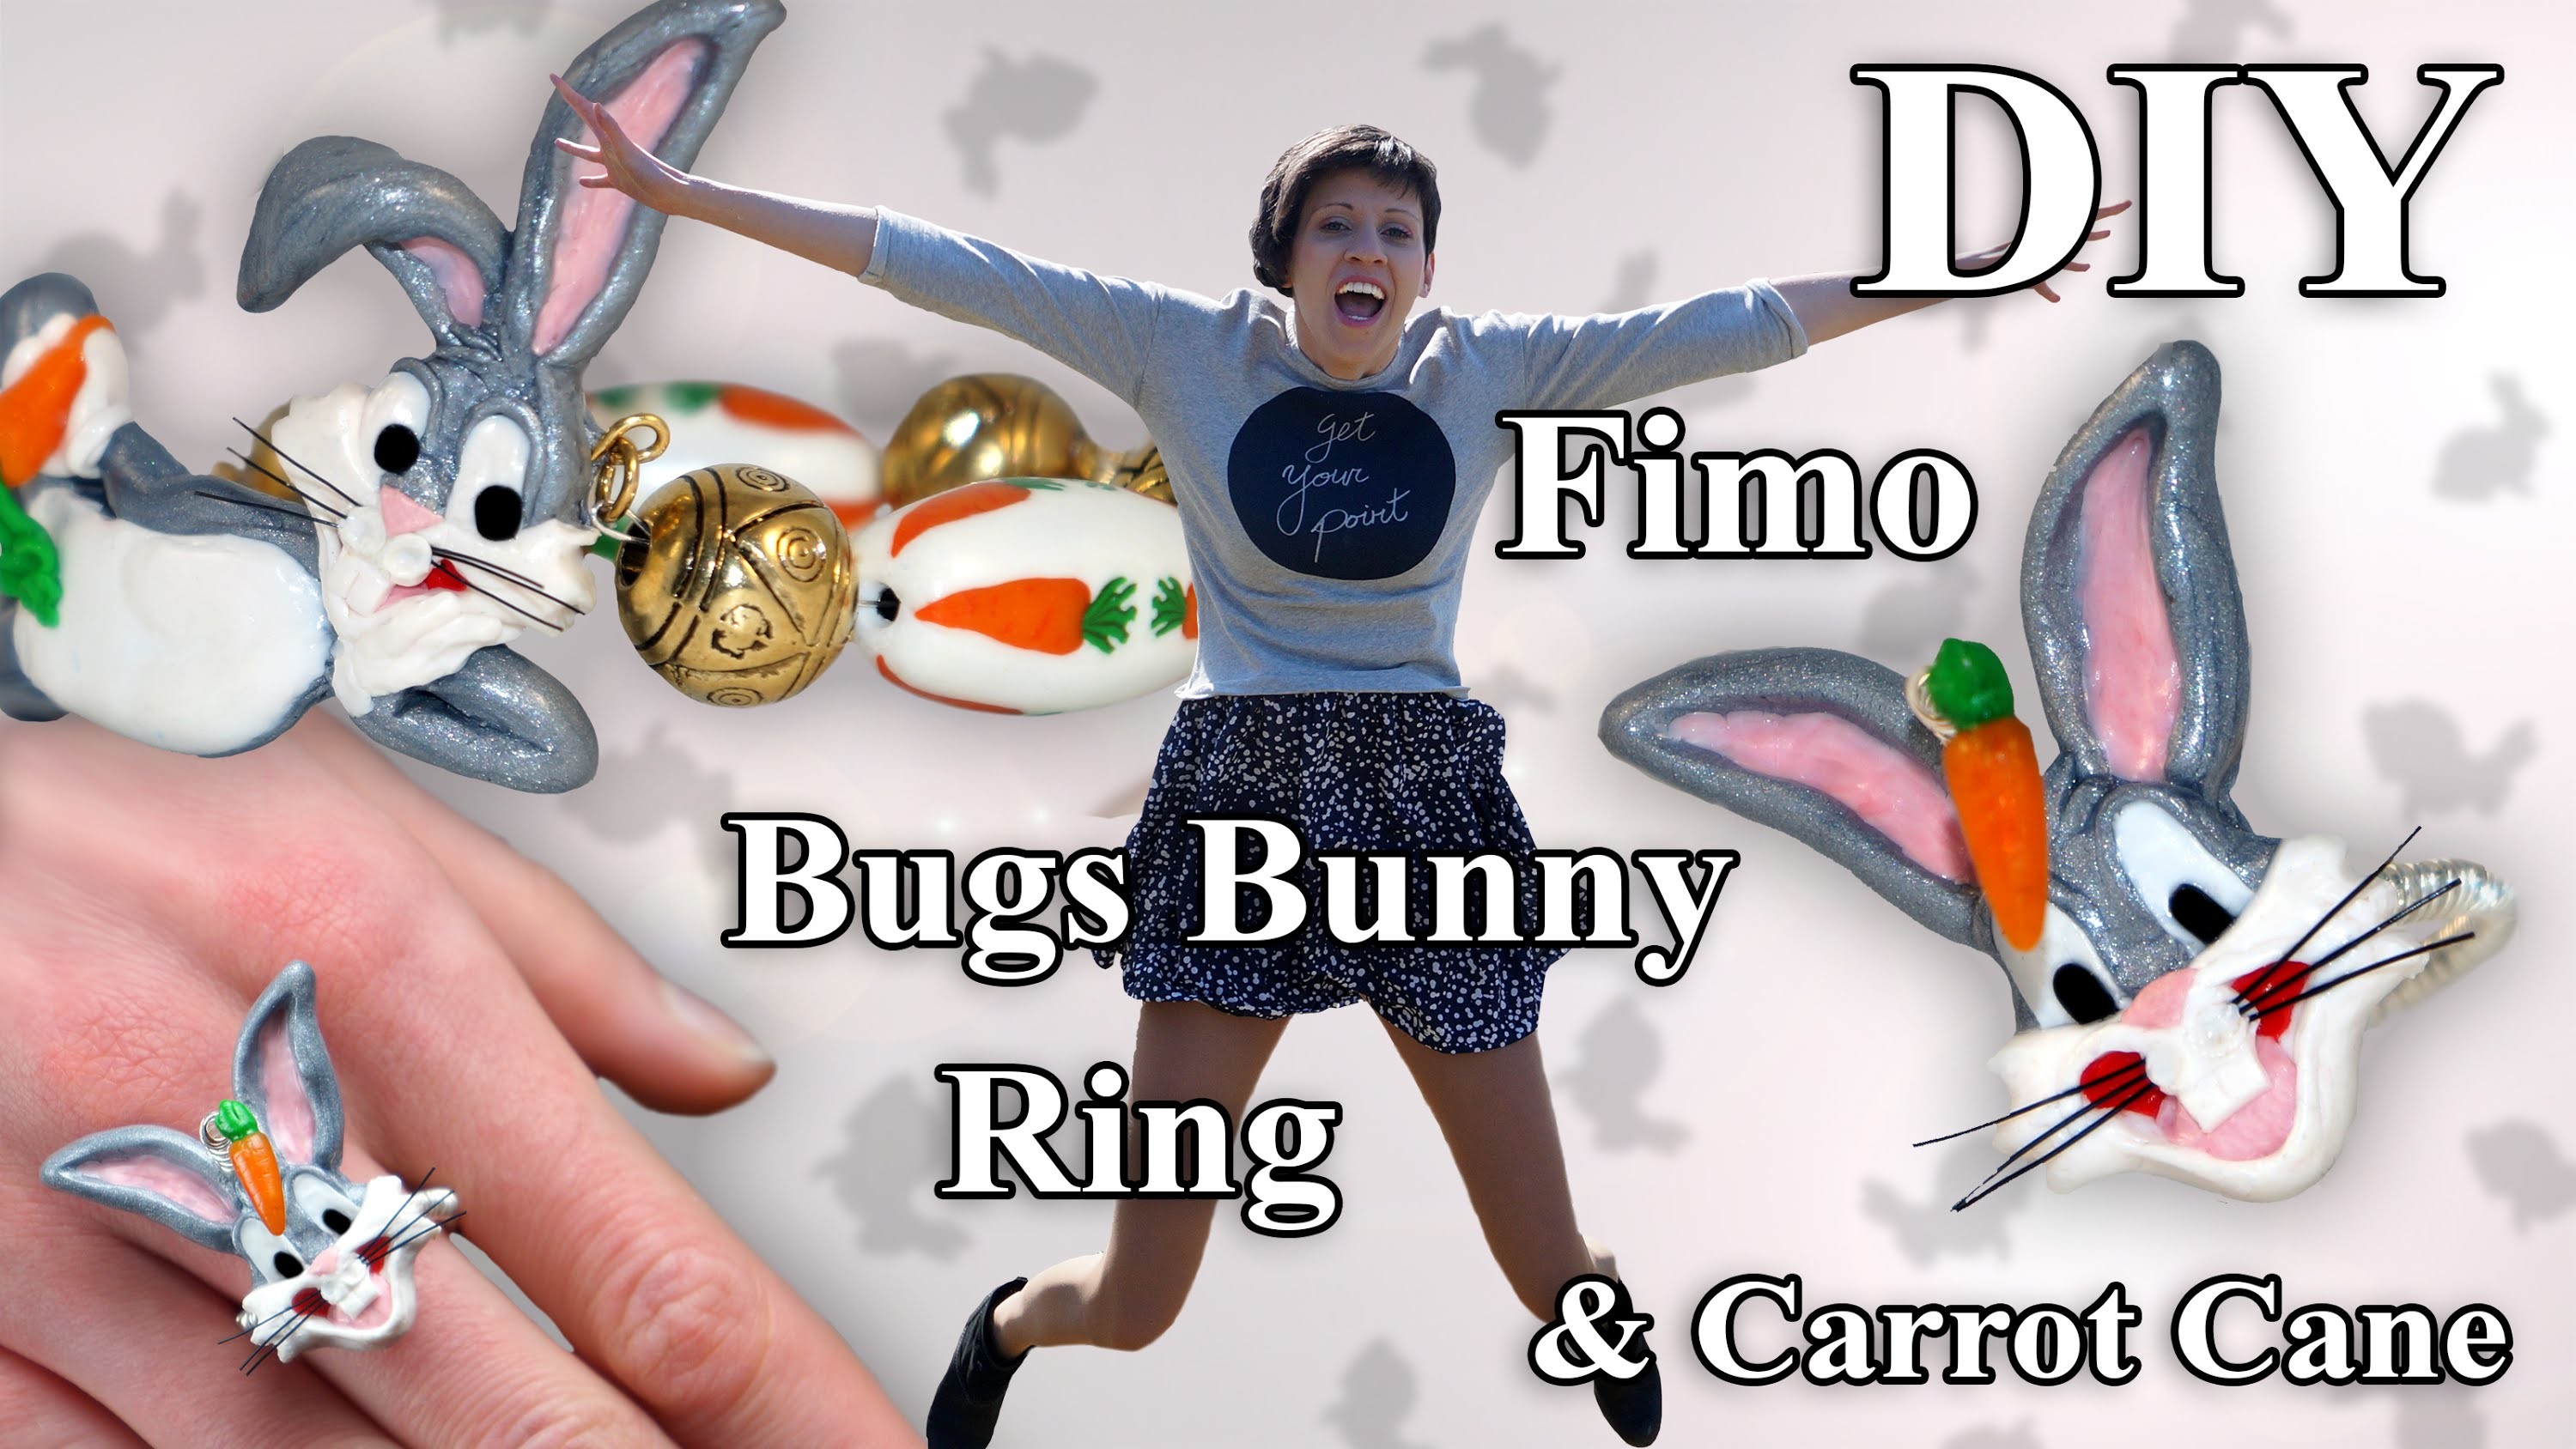 FIMO Karotten Cane: Polymer Bugs Bunny Ring - Tutorial [HD.DE] (EN-Sub)